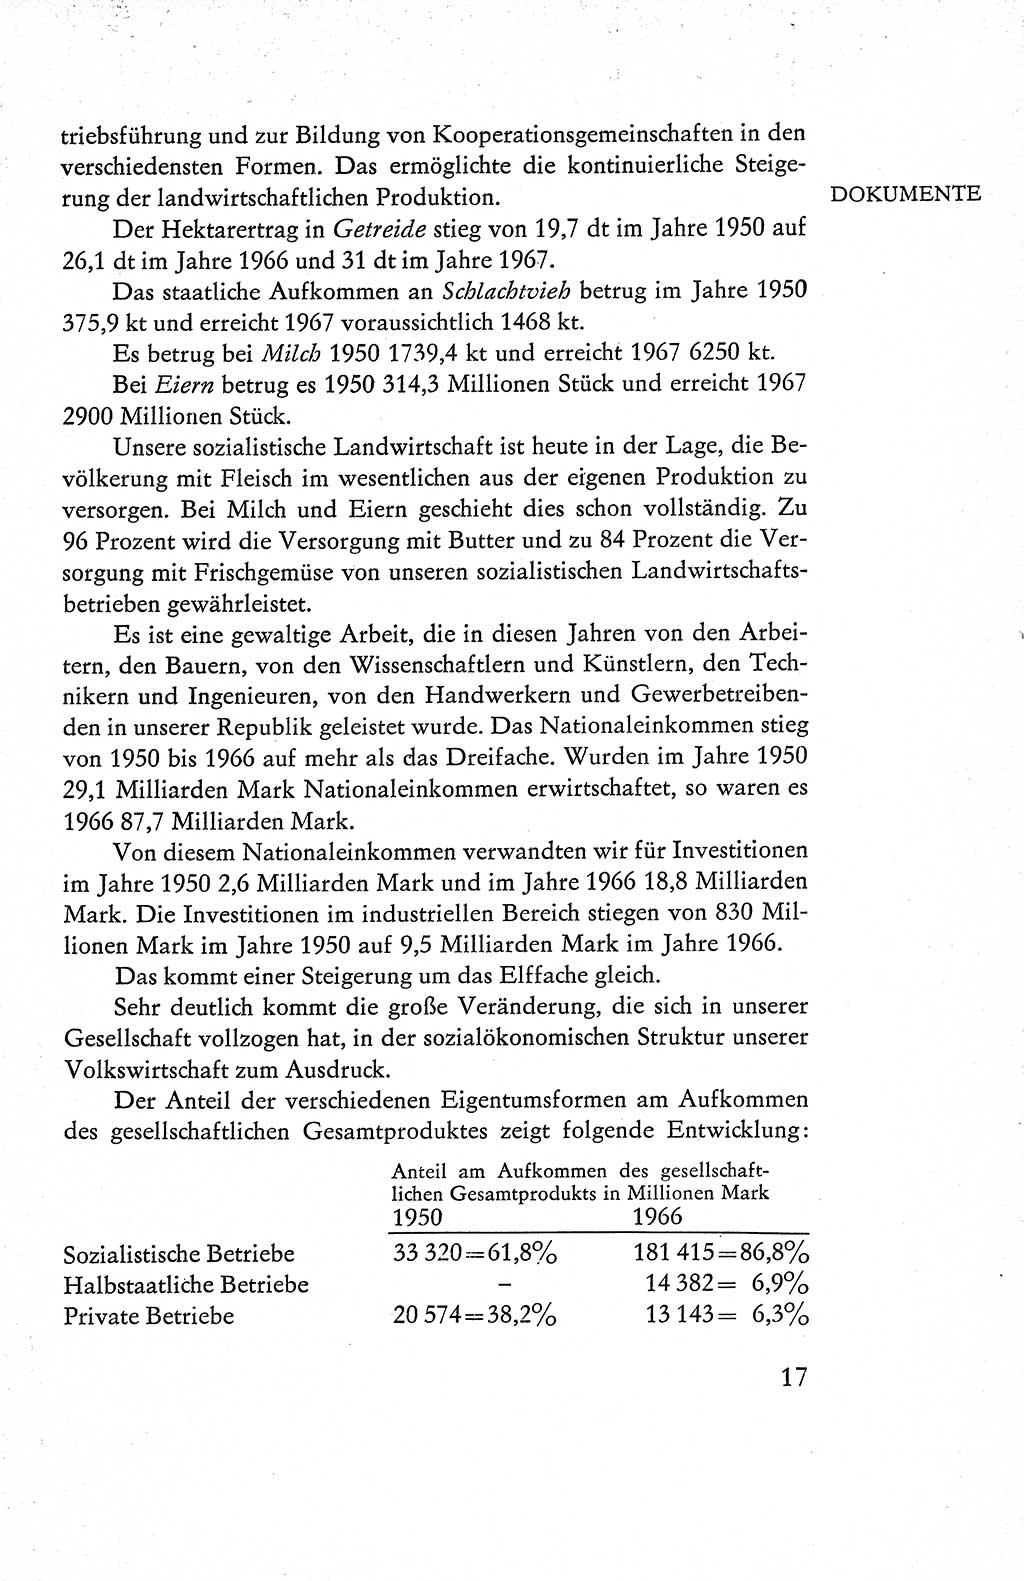 Verfassung der Deutschen Demokratischen Republik (DDR), Dokumente, Kommentar 1969, Band 1, Seite 17 (Verf. DDR Dok. Komm. 1969, Bd. 1, S. 17)